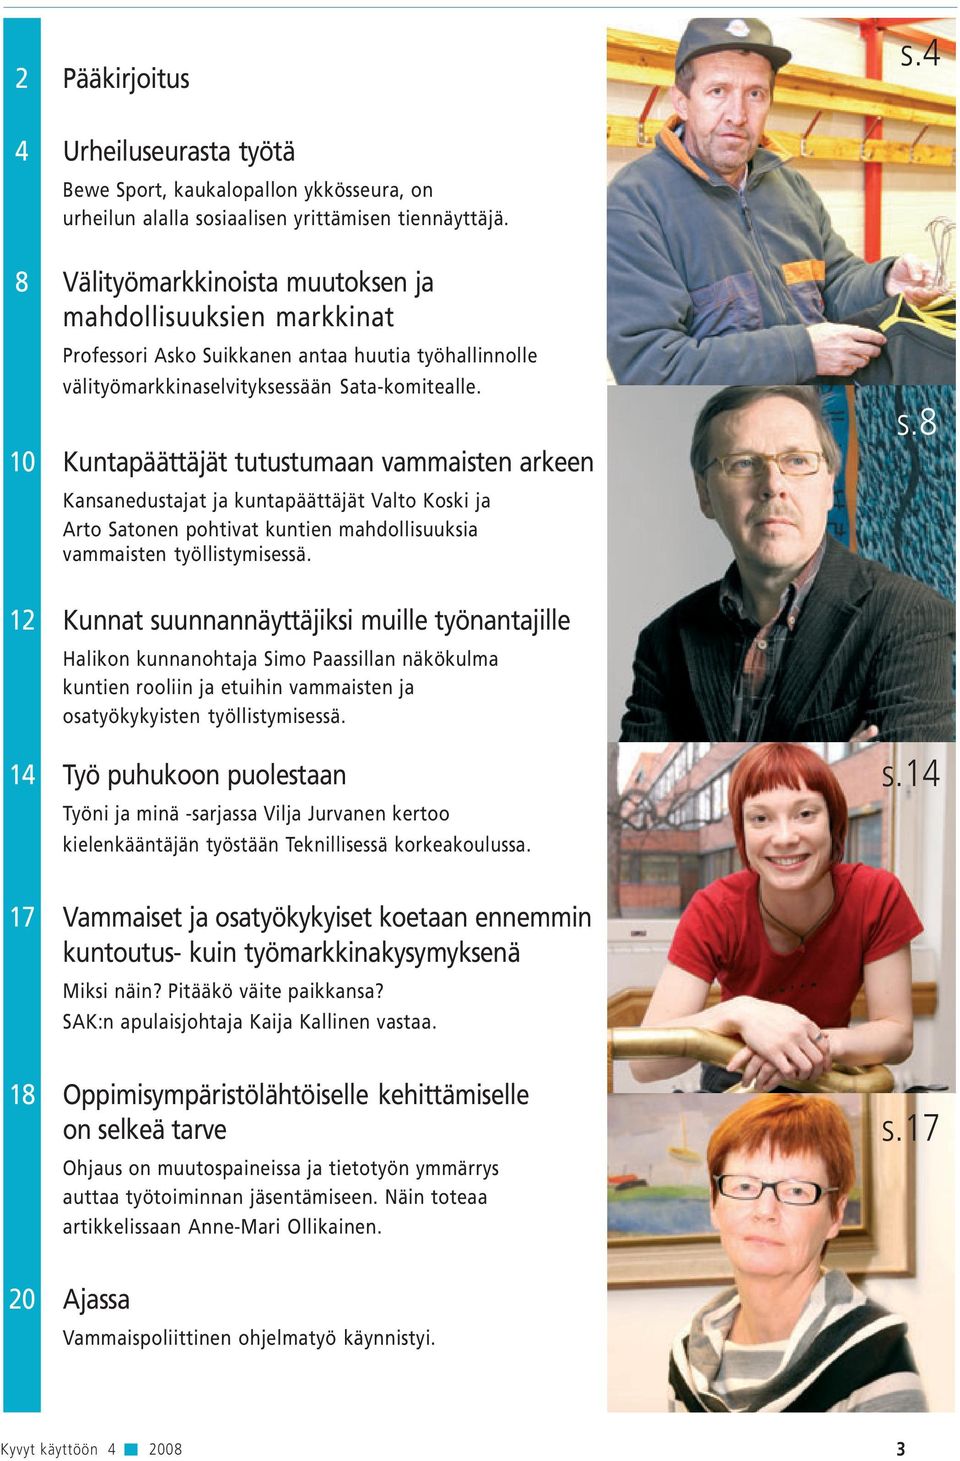 10 Kuntapäättäjät tutustumaan vammaisten arkeen Kansanedustajat ja kuntapäättäjät Valto Koski ja Arto Satonen pohtivat kuntien mahdollisuuksia vammaisten työllistymisessä. s.